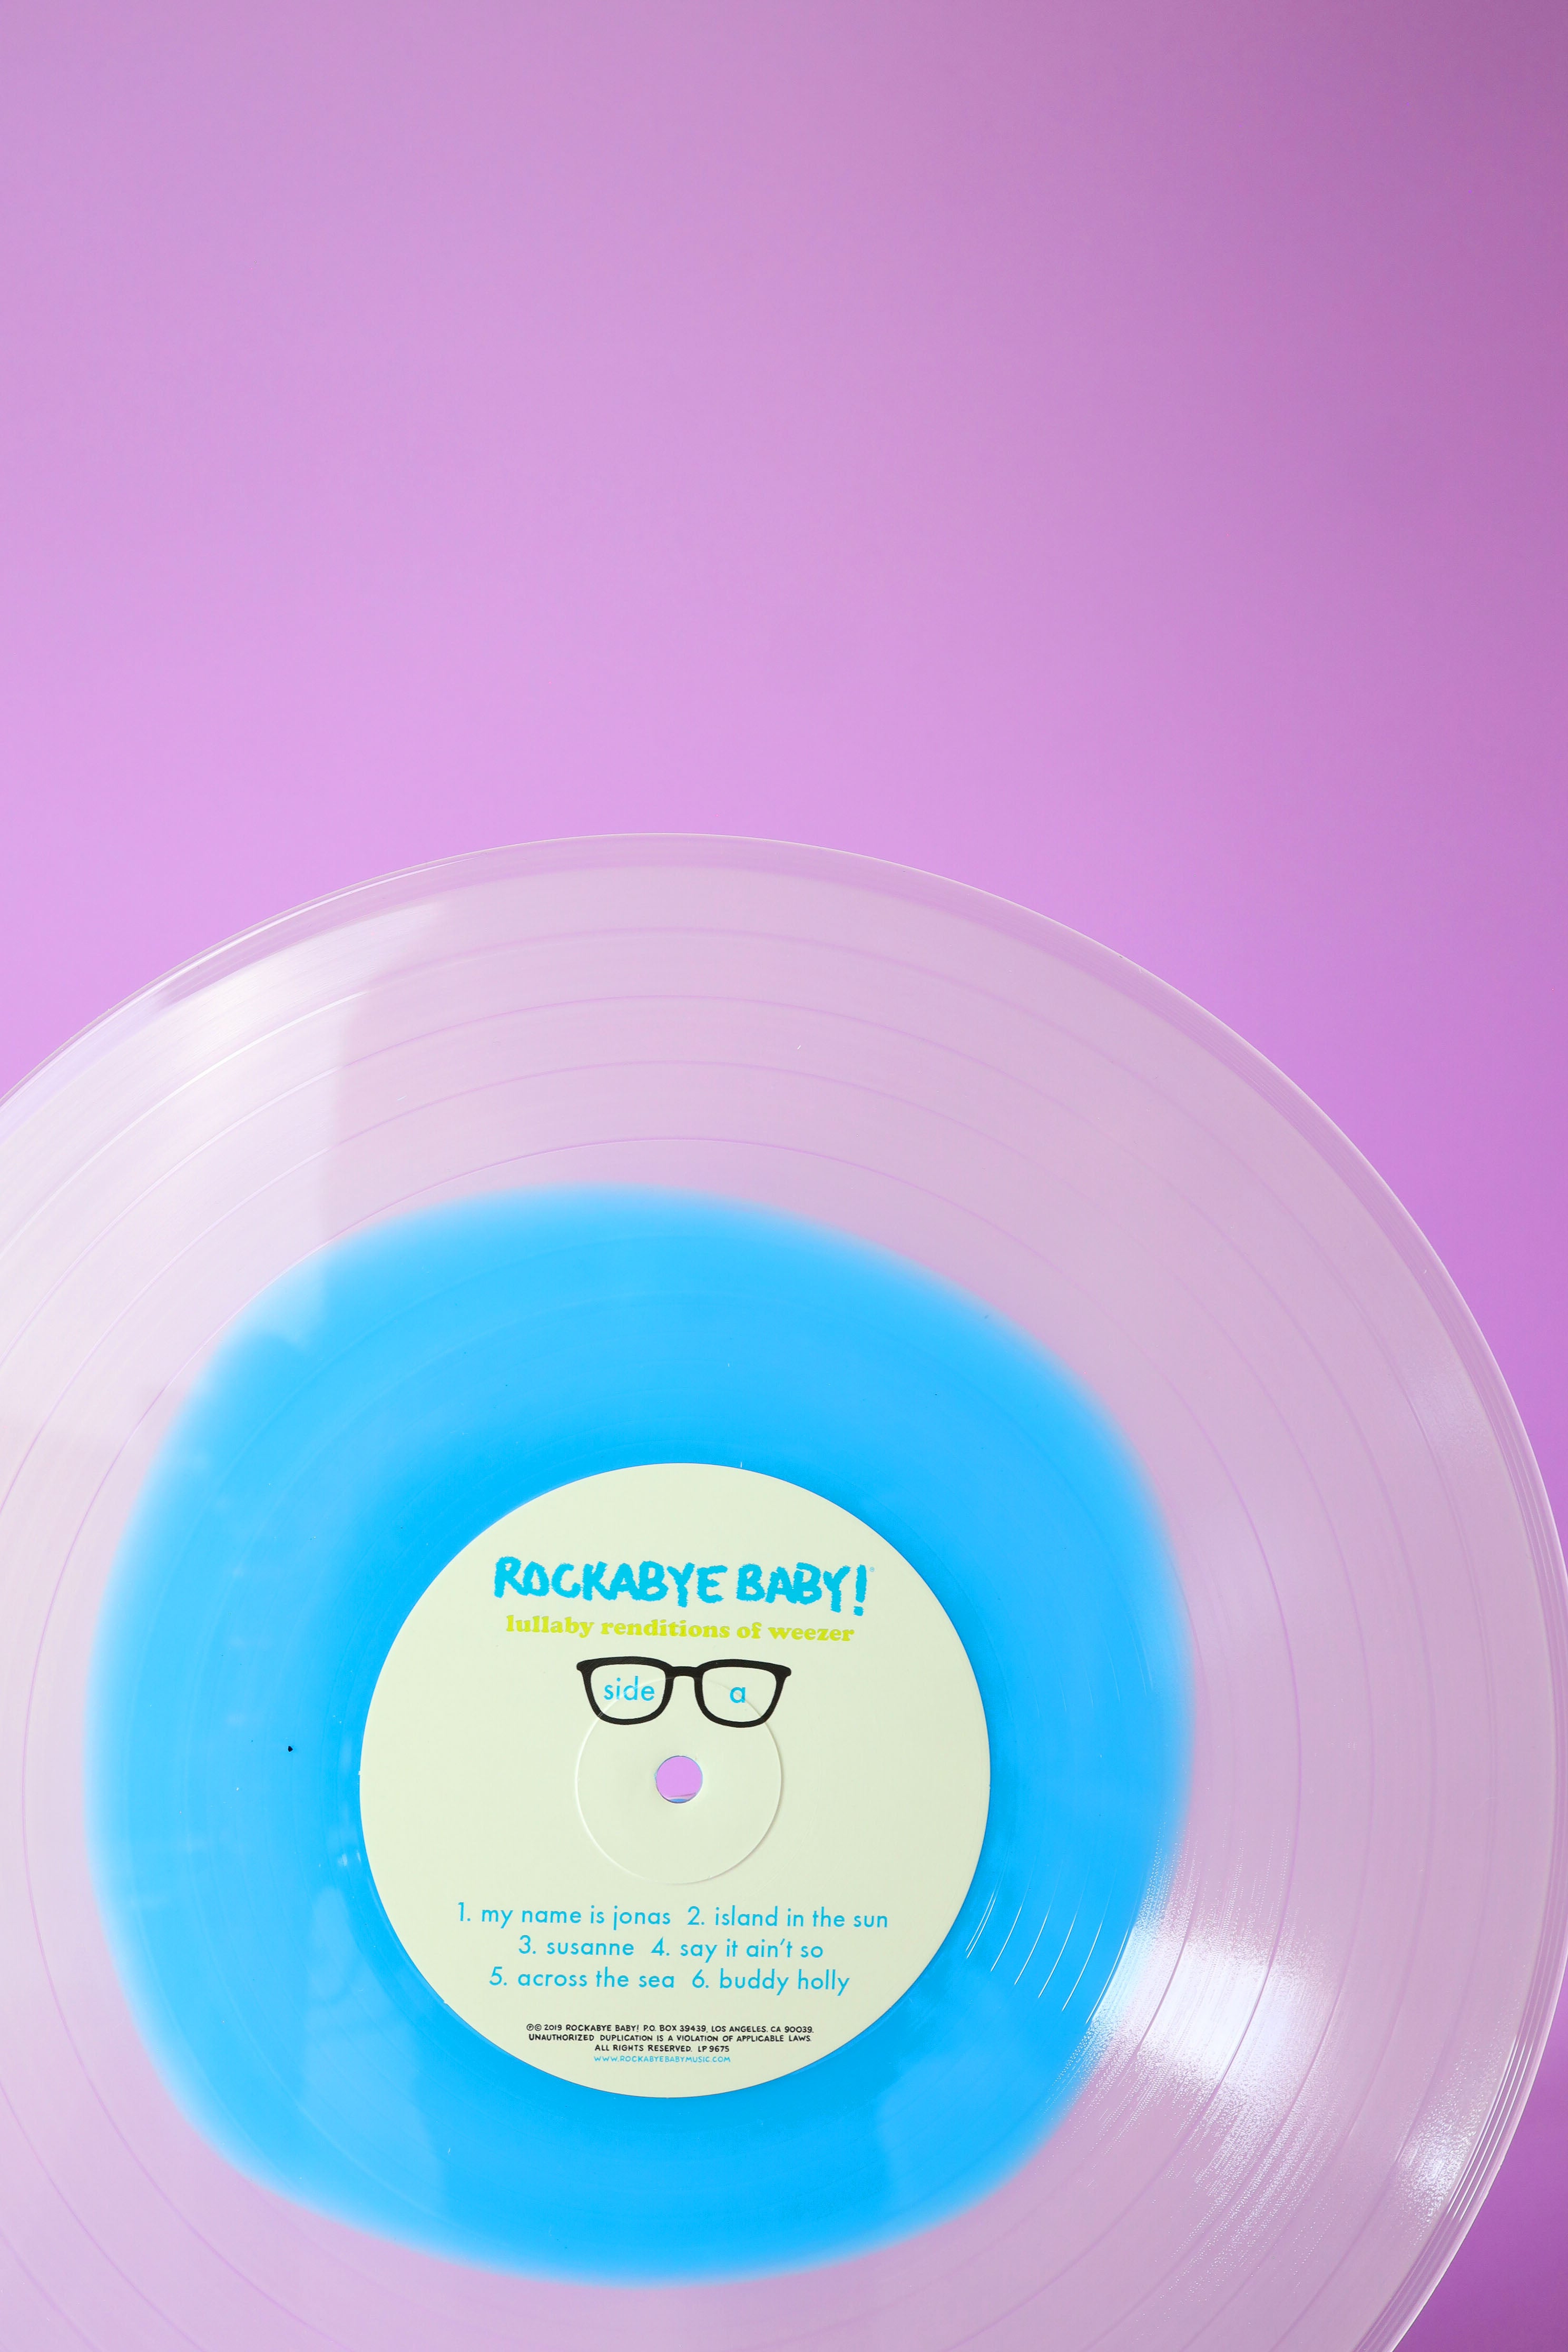 Lullaby Renditions of Weezer - Vinyl